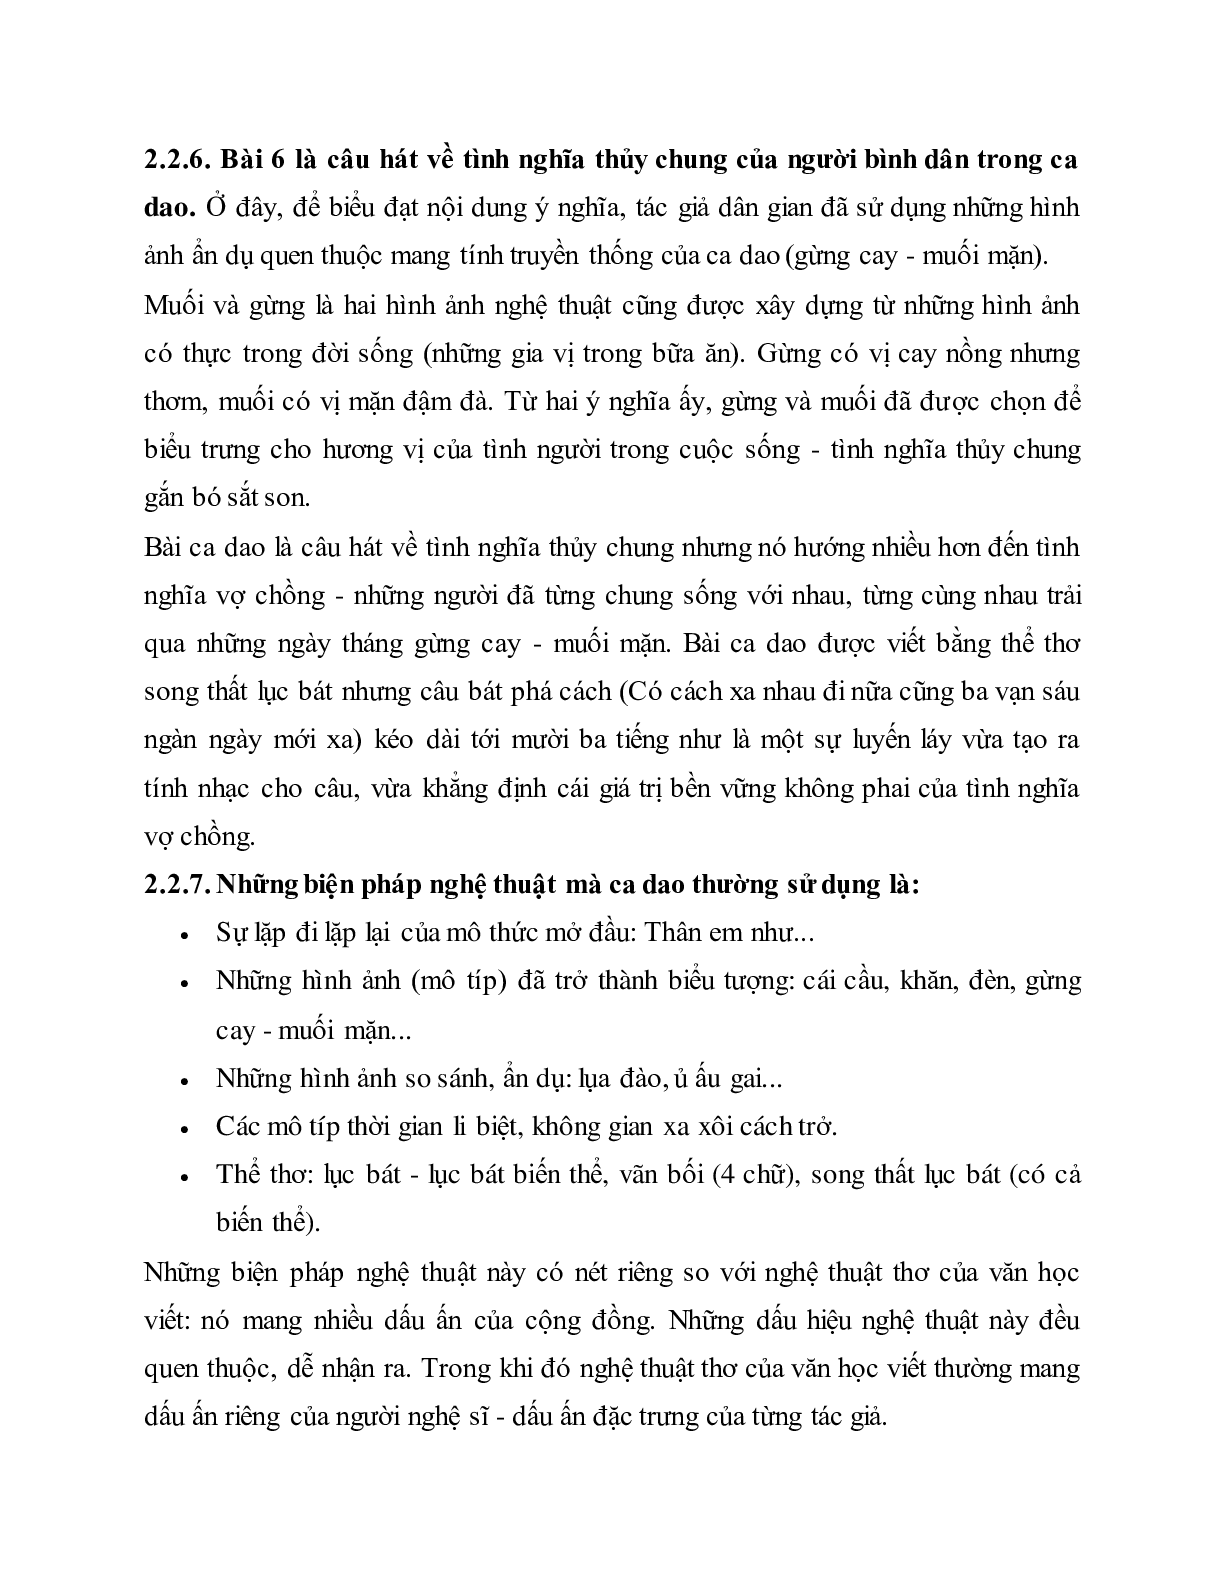 Soạn bài Ca dao than thân và ca dao yêu thương, tình nghĩa - ngắn nhất Soạn văn 10 (trang 9)